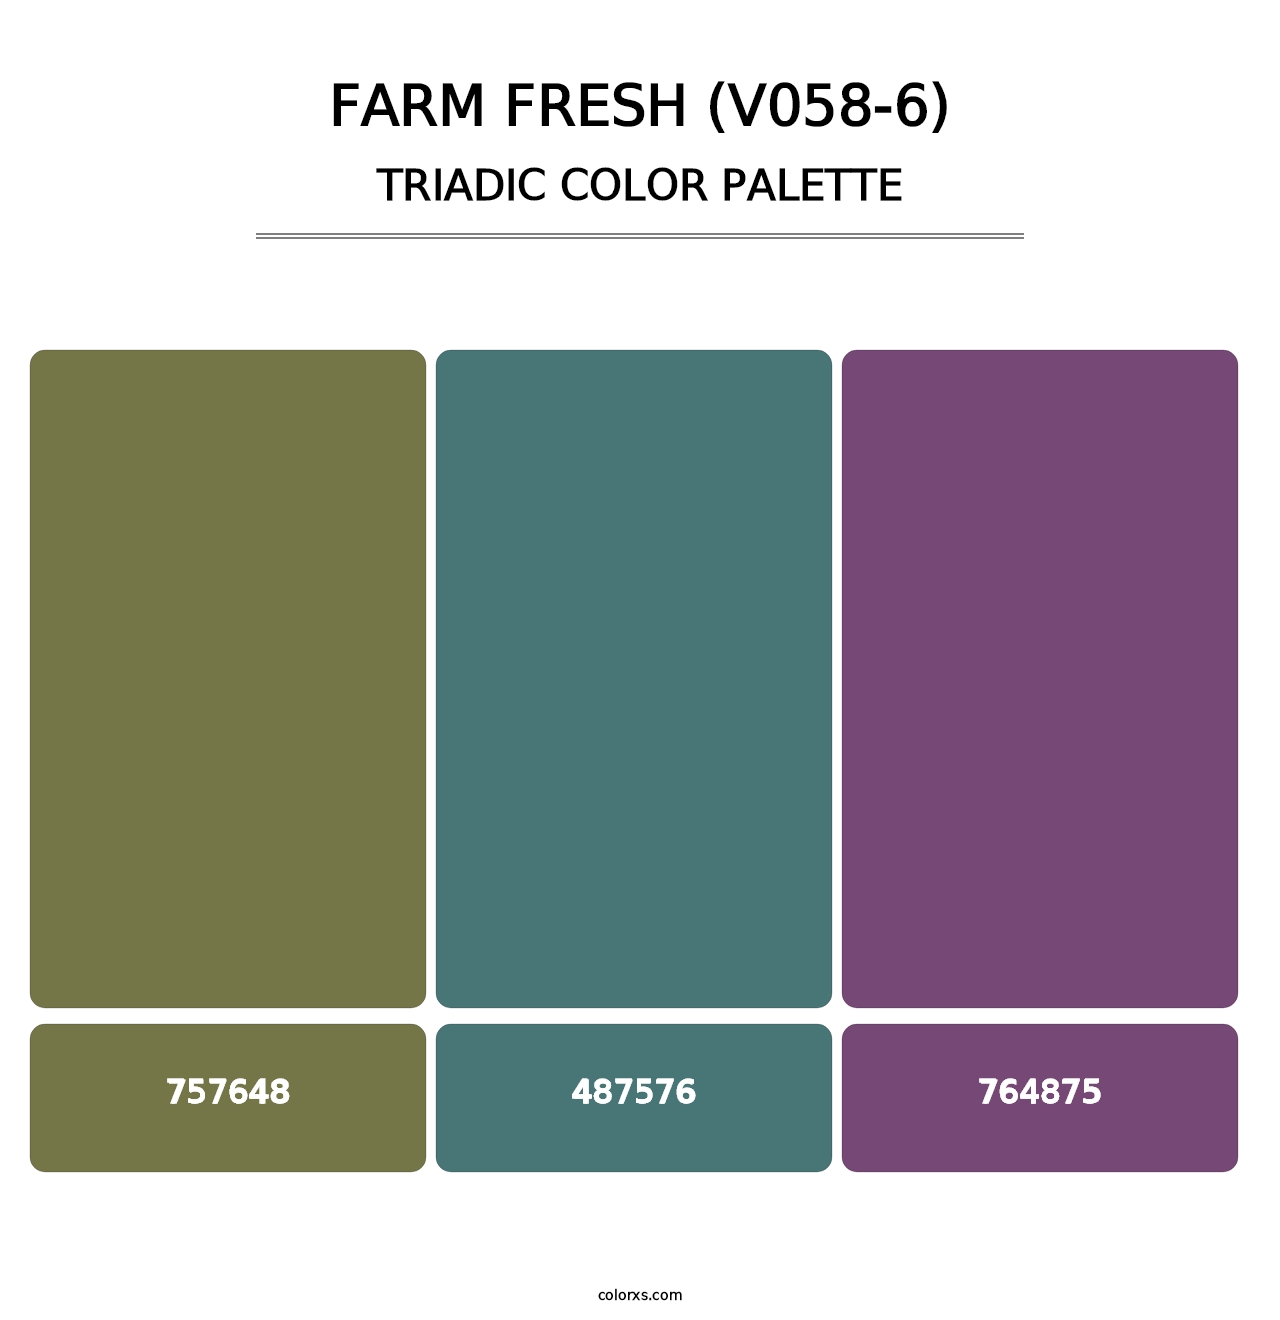 Farm Fresh (V058-6) - Triadic Color Palette